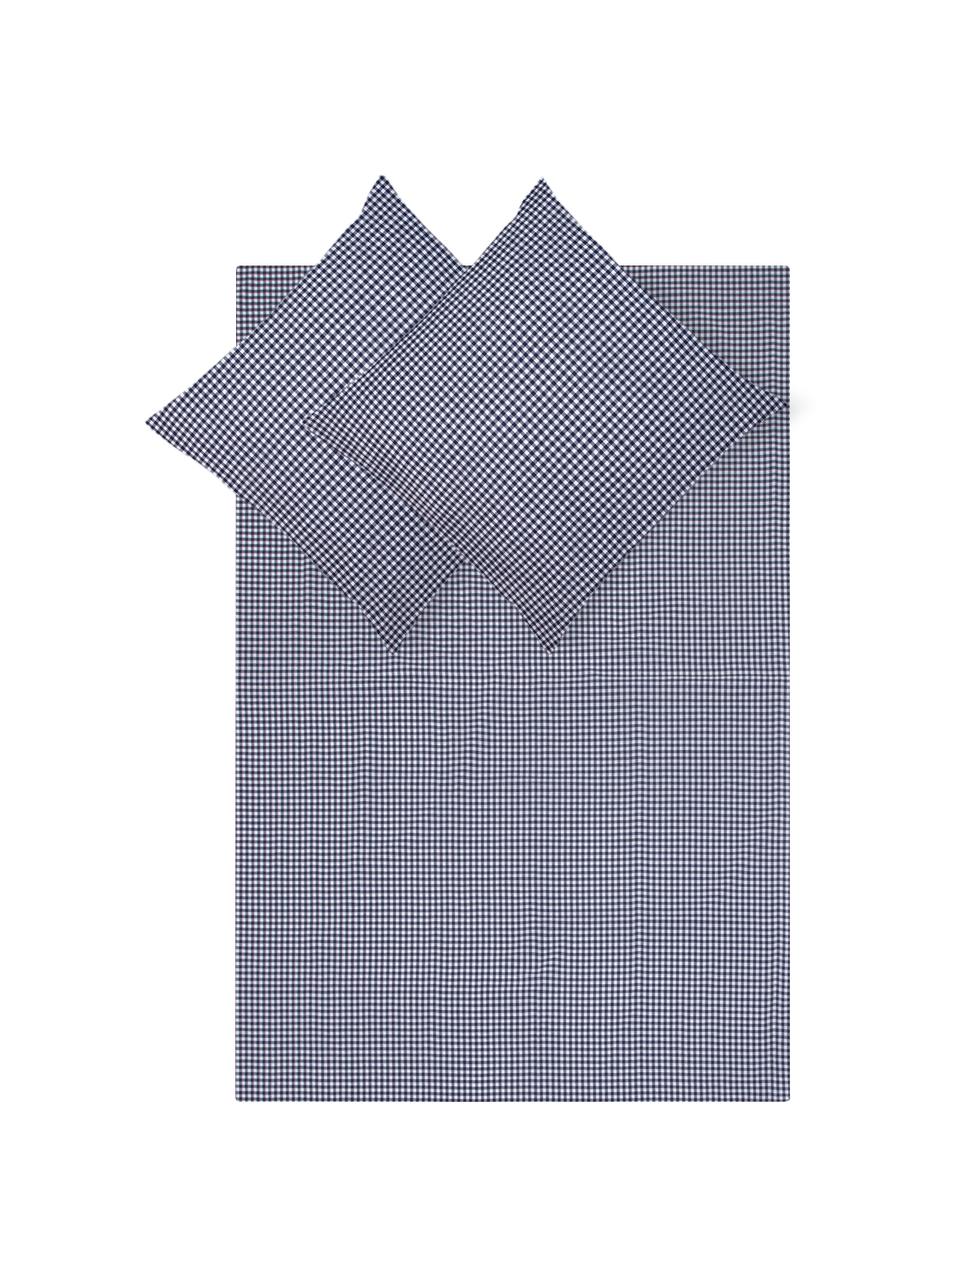 Karierte Baumwoll-Bettwäsche Scotty in Blau/Weiß, 100% Baumwolle

Fadendichte 118 TC, Standard Qualität

Bettwäsche aus Baumwolle fühlt sich auf der Haut angenehm weich an, nimmt Feuchtigkeit gut auf und eignet sich für Allergiker, Blau/Weiß, 200 x 200 cm + 2 Kissen 80 x 80 cm